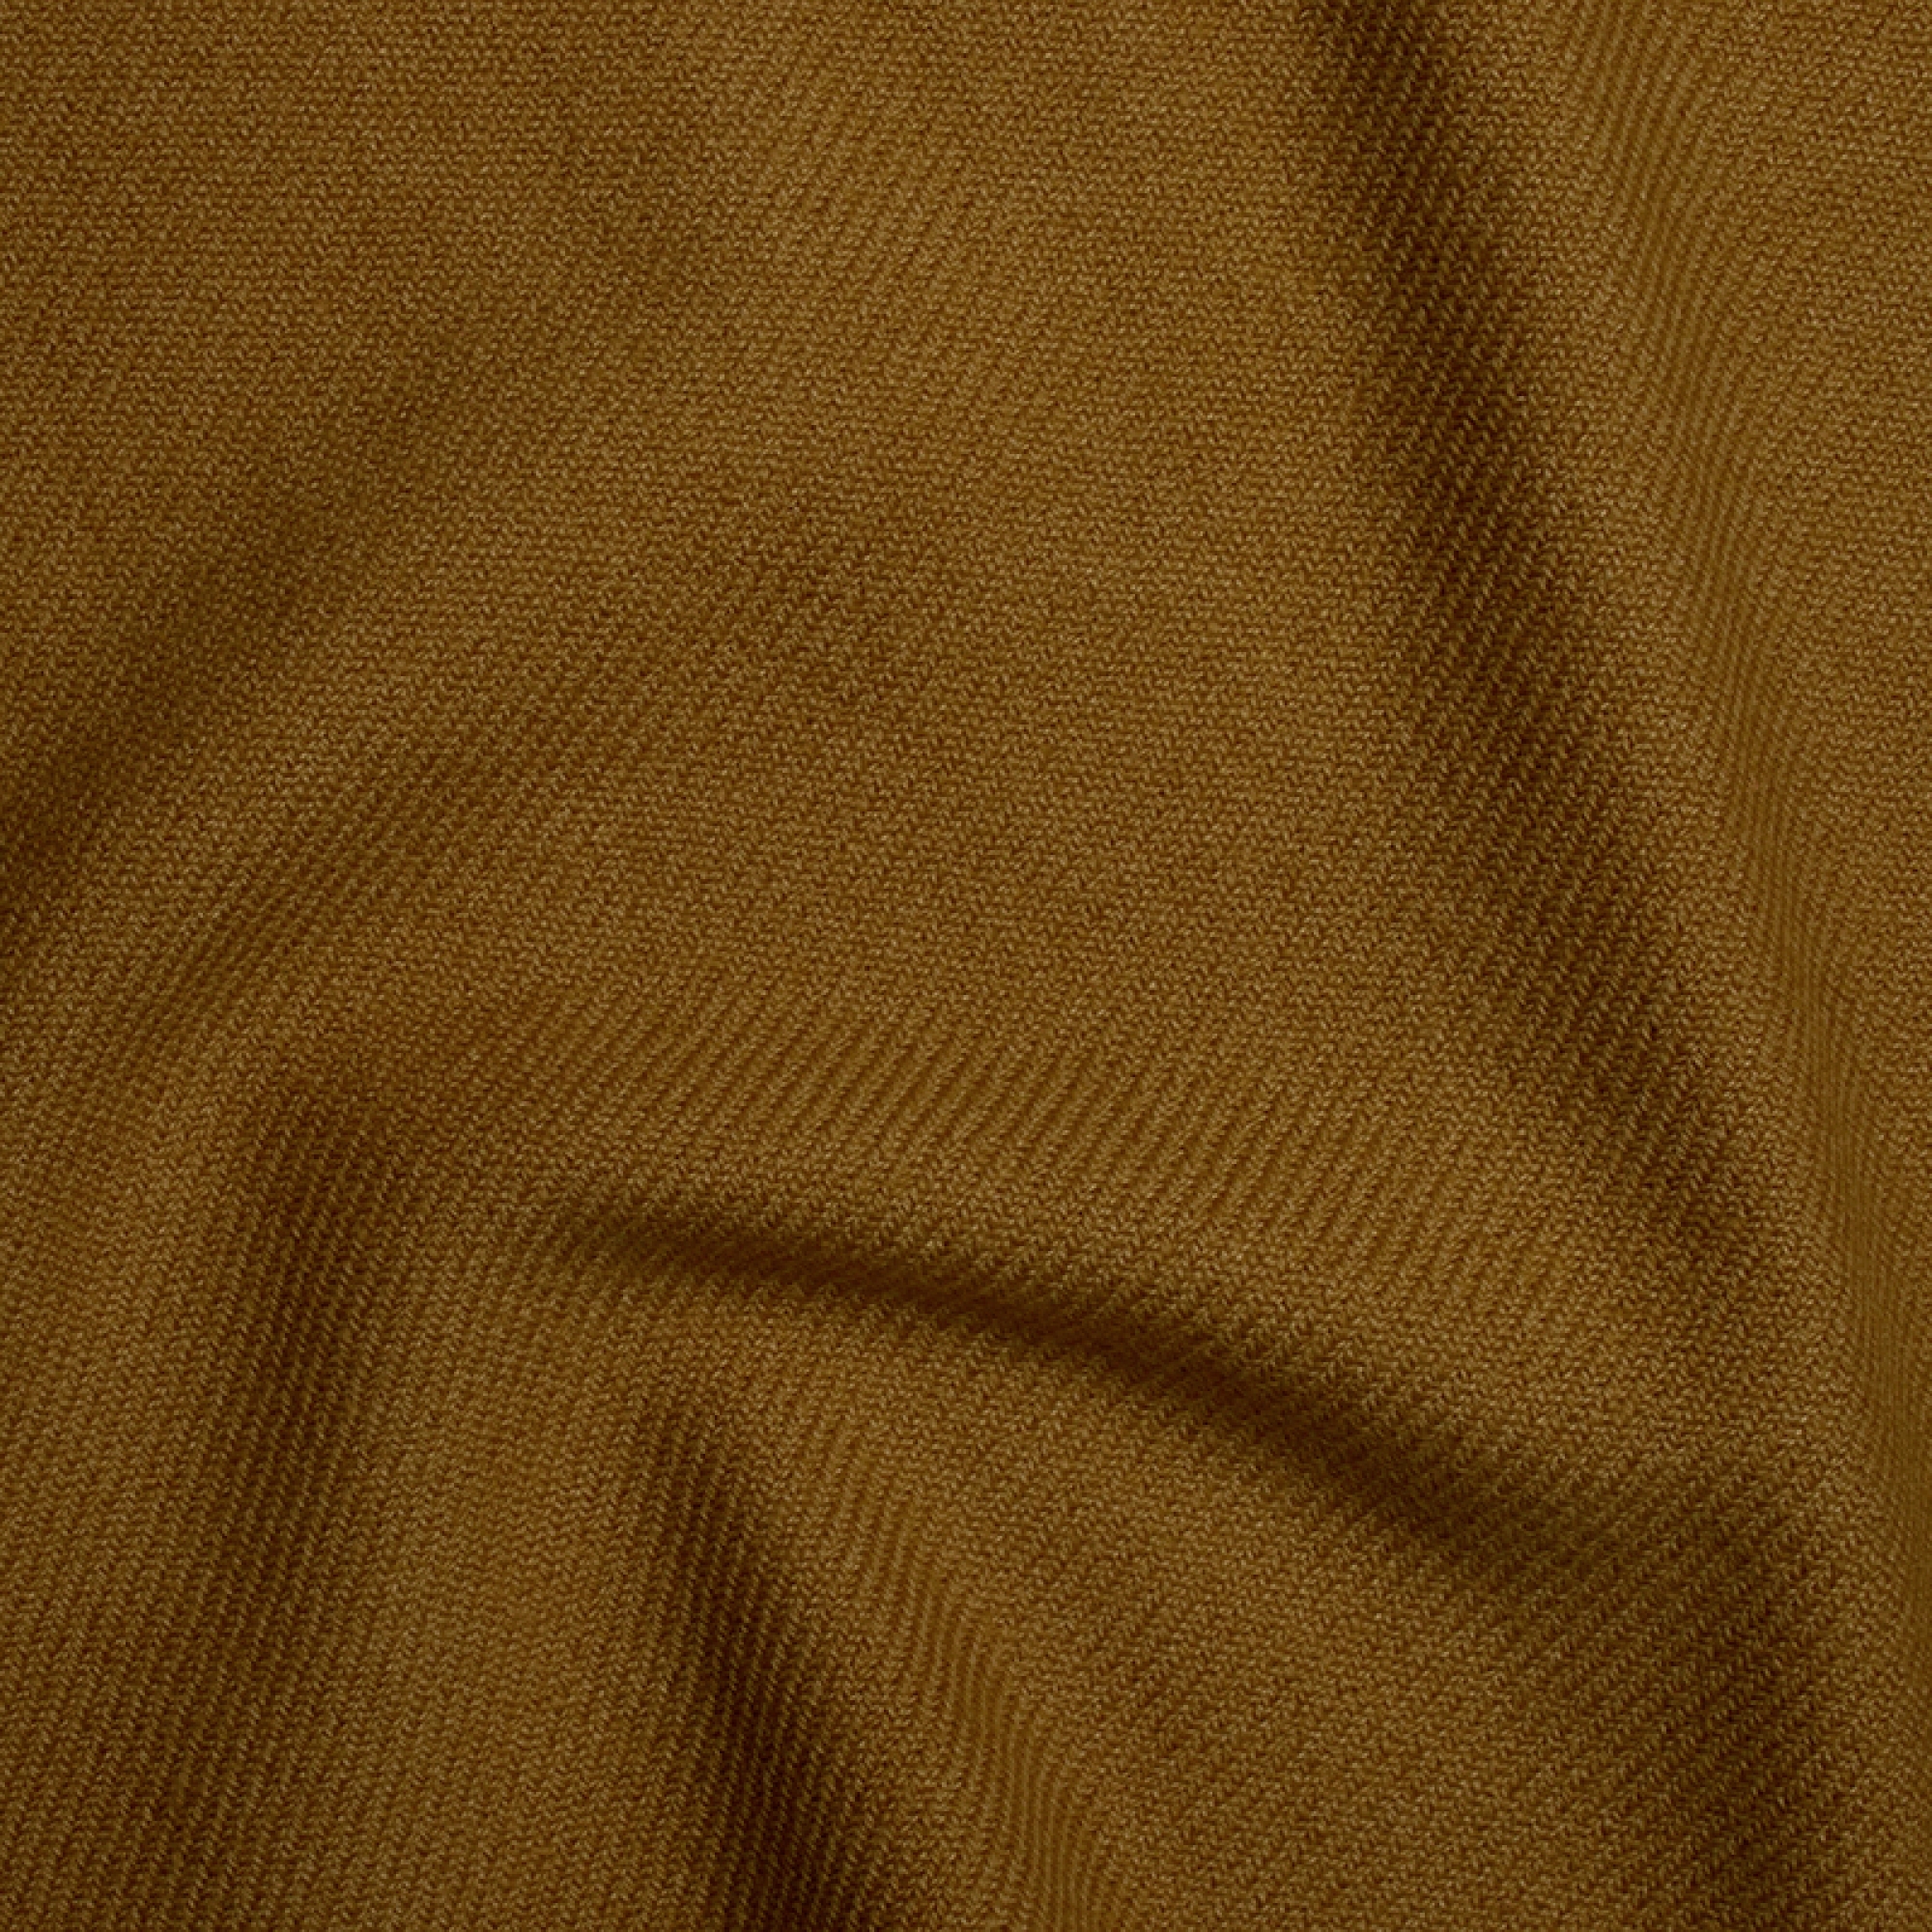 Cashmere cashmere donna toodoo plain m 180 x 220 burro di arachidi 180 x 220 cm